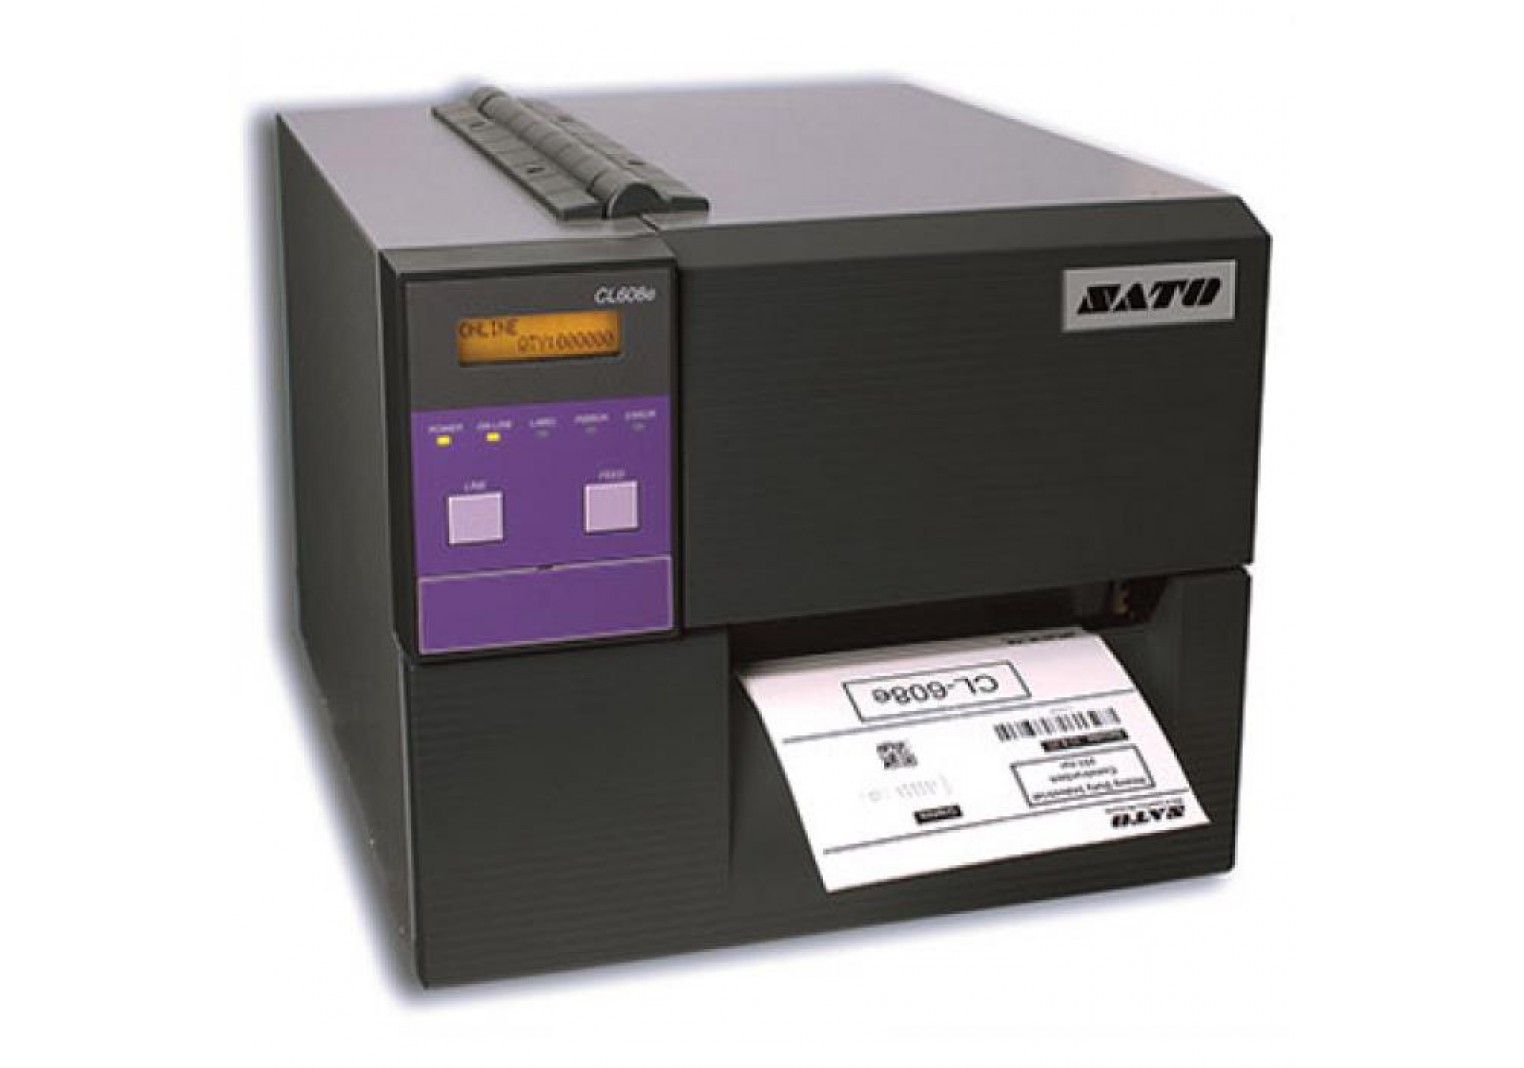 เครื่องพิมพ์บาร์โค้ด SATO CL608e